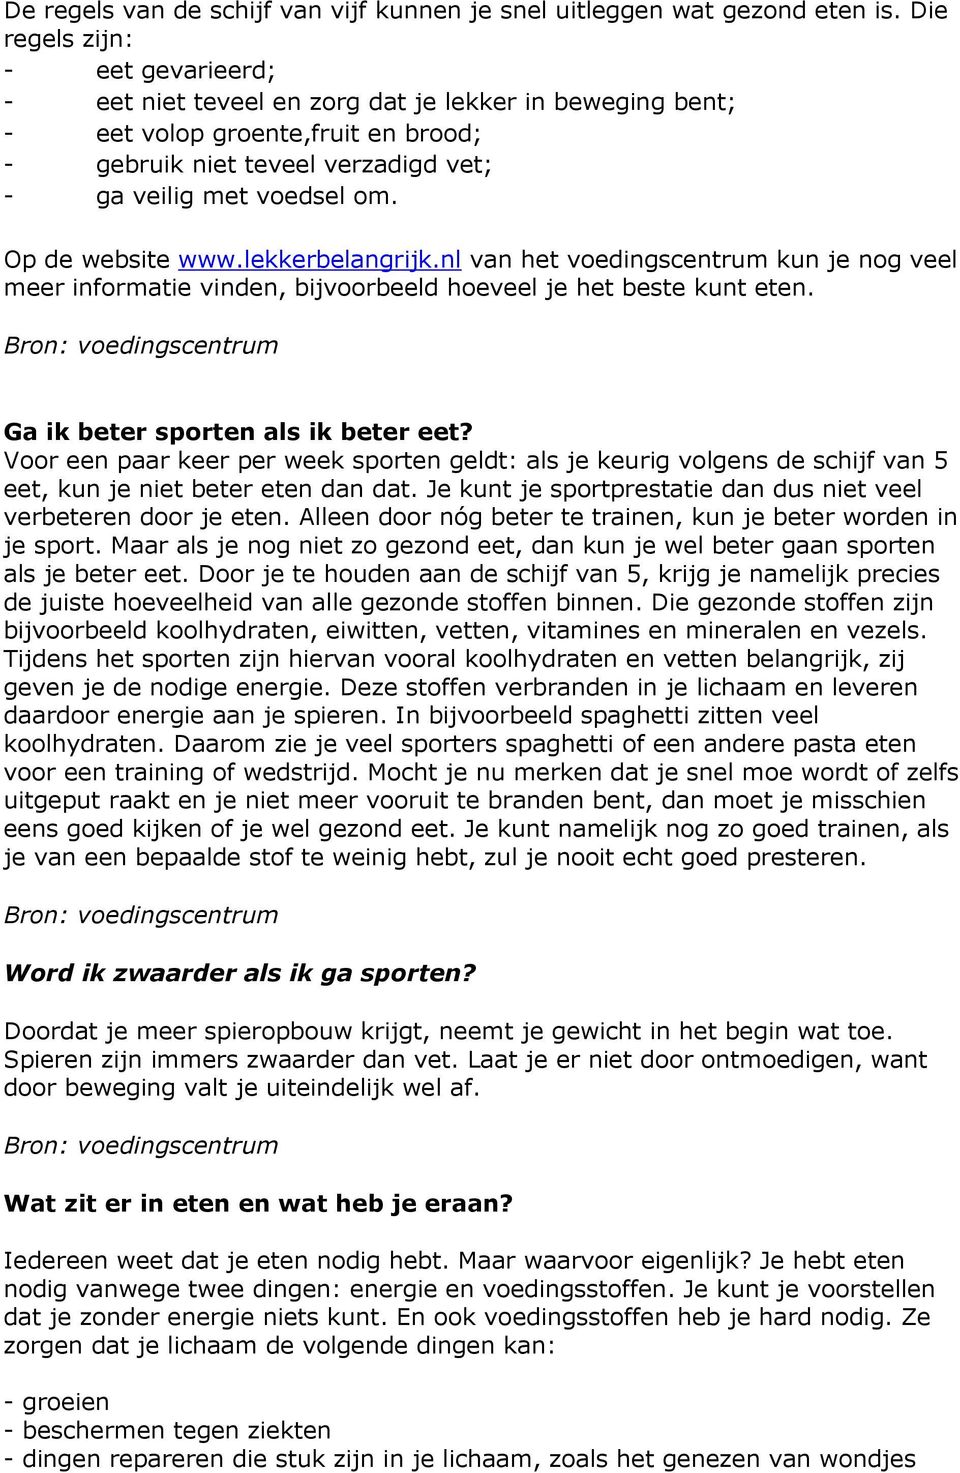 Op de website www.lekkerbelangrijk.nl van het voedingscentrum kun je nog veel meer informatie vinden, bijvoorbeeld hoeveel je het beste kunt eten. Ga ik beter sporten als ik beter eet?